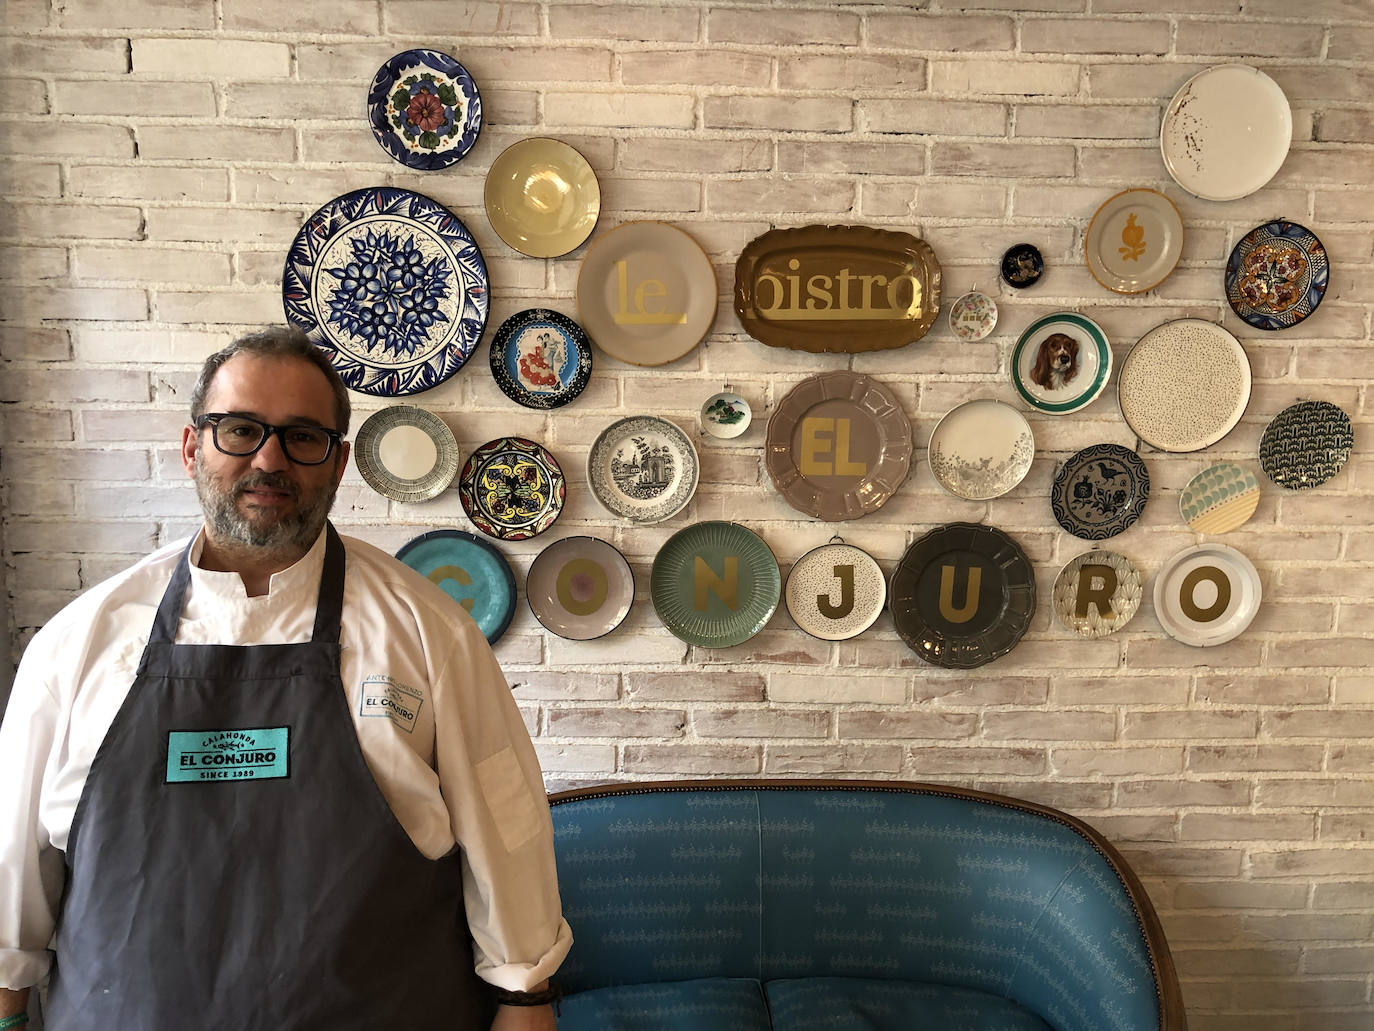 Antonio Lorenzo, cocinero de El Conjuro, cuya apertura en Granada es una de las mejores noticias del año.